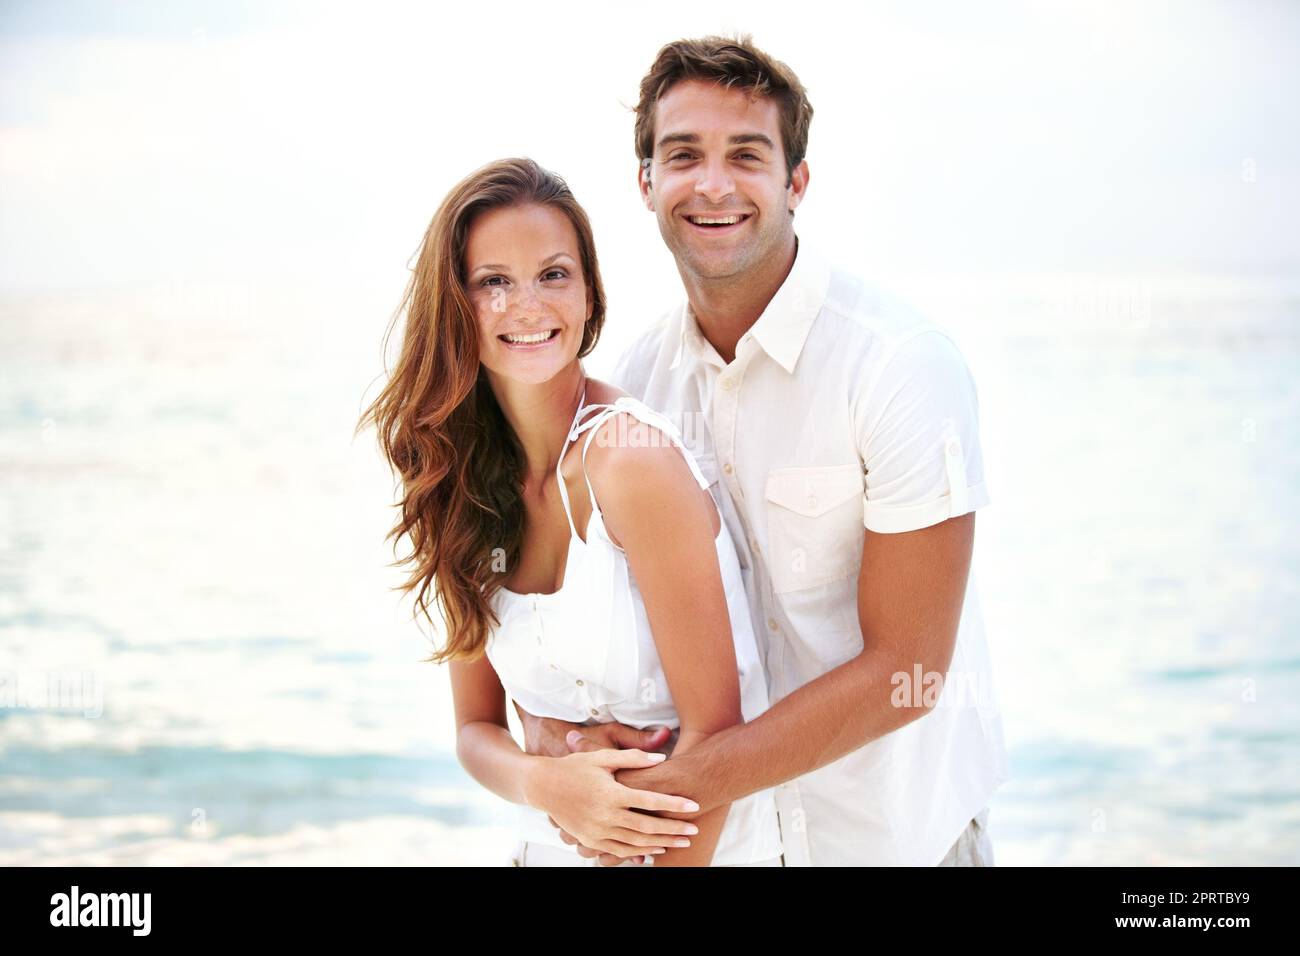 Entspannt und verliebt. Porträt eines wunderschönen jungen Paares, das sich liebevoll am Strand hält. Stockfoto